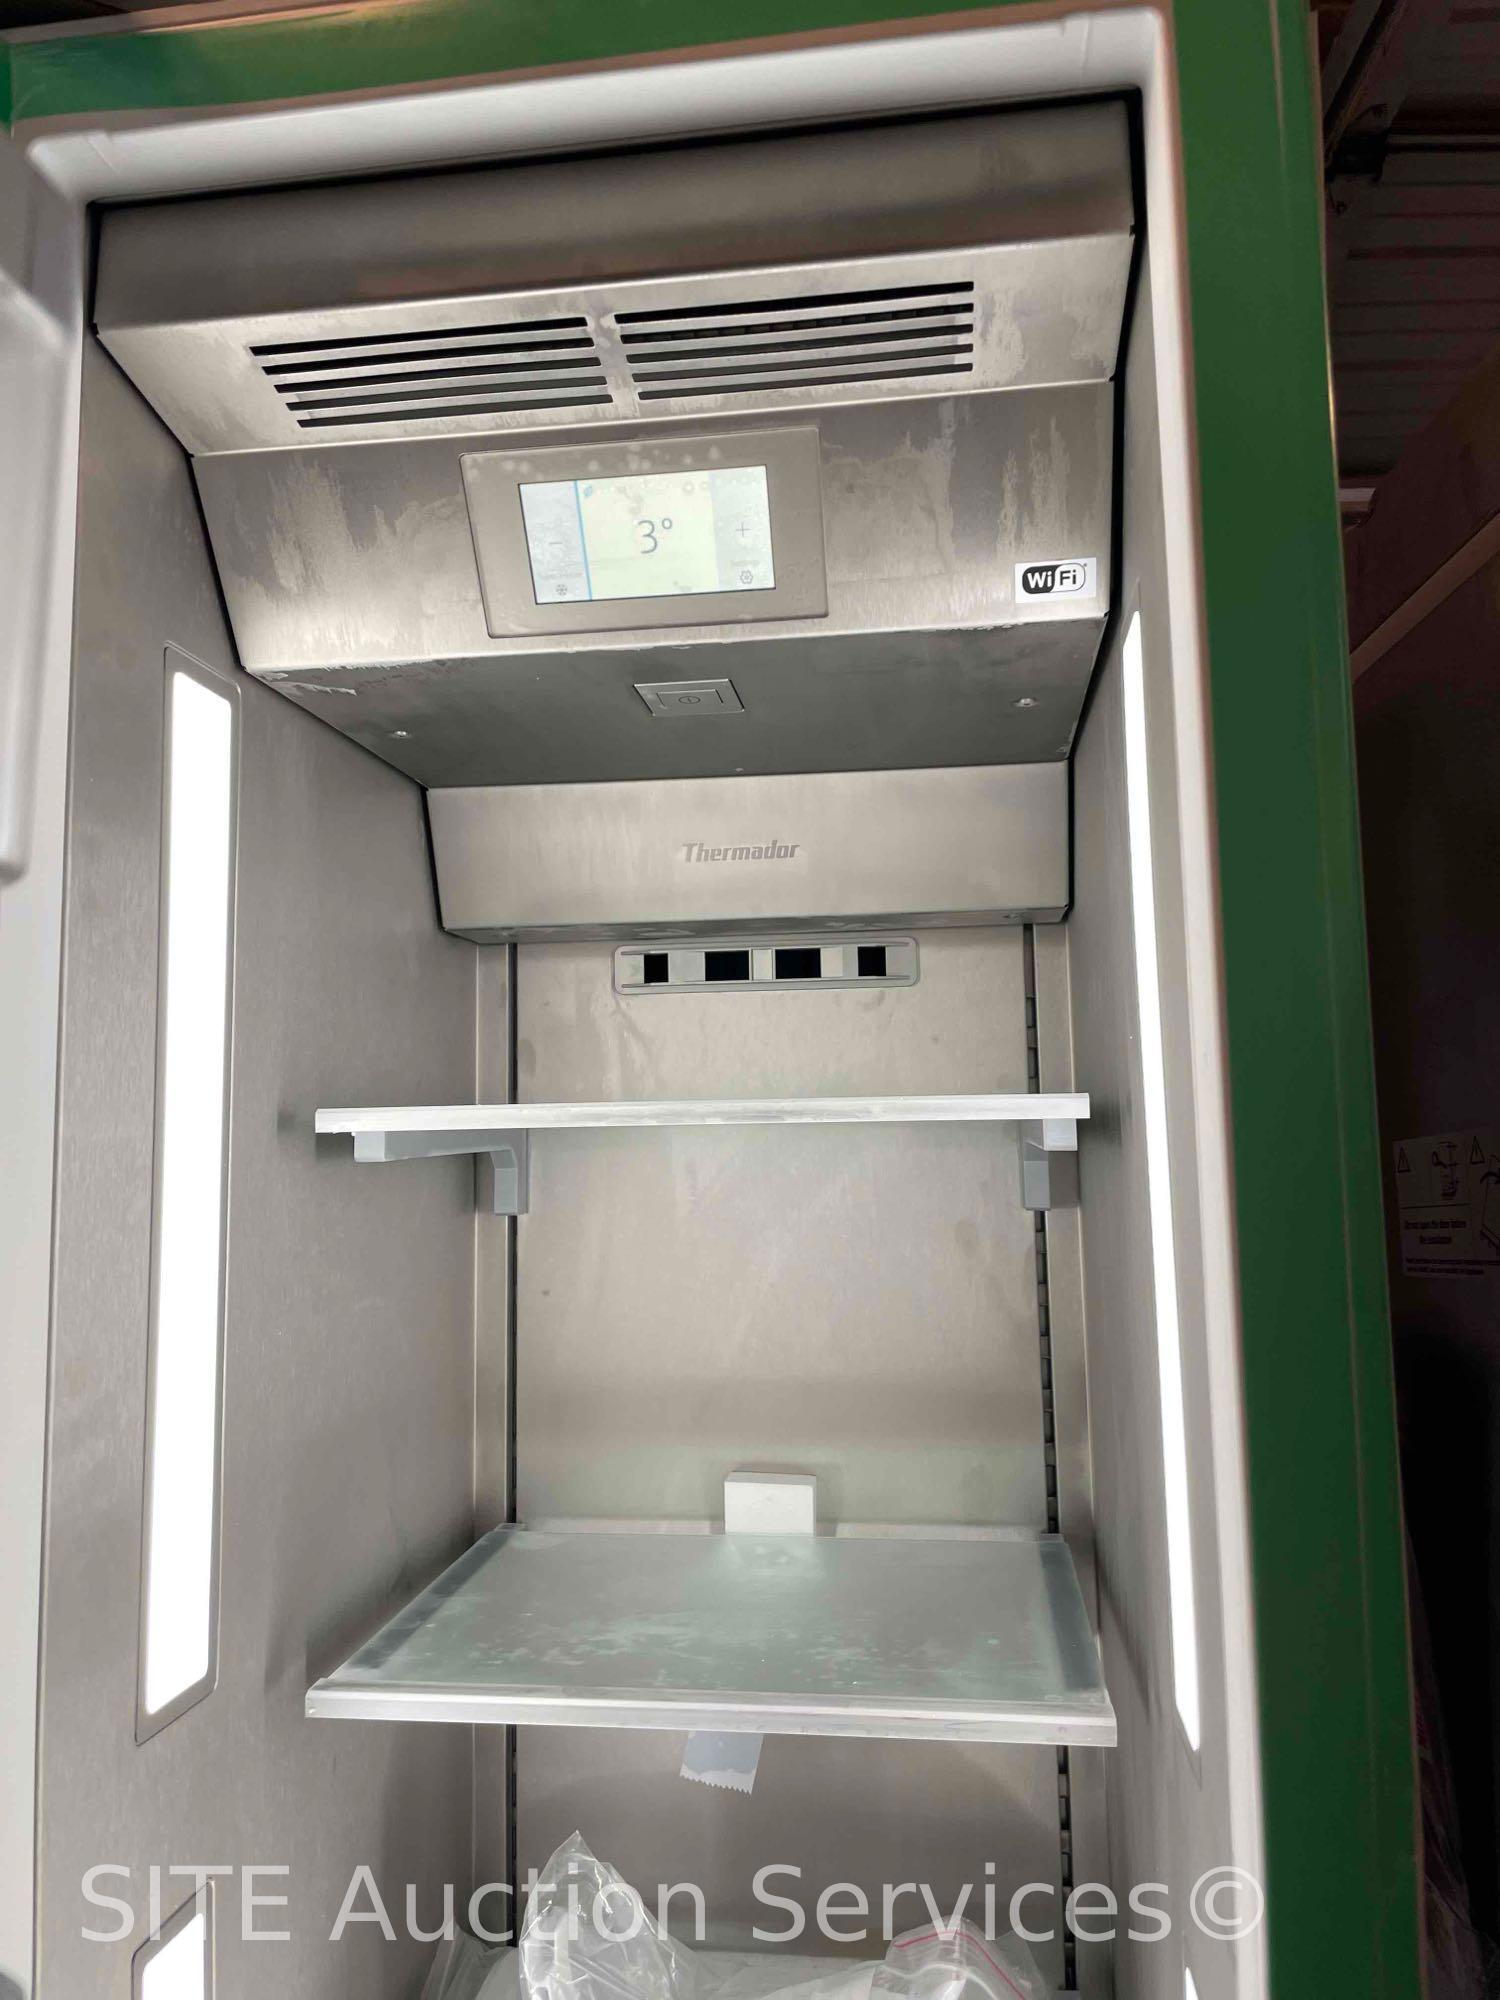 Thermadoor Built-In Module Freezer